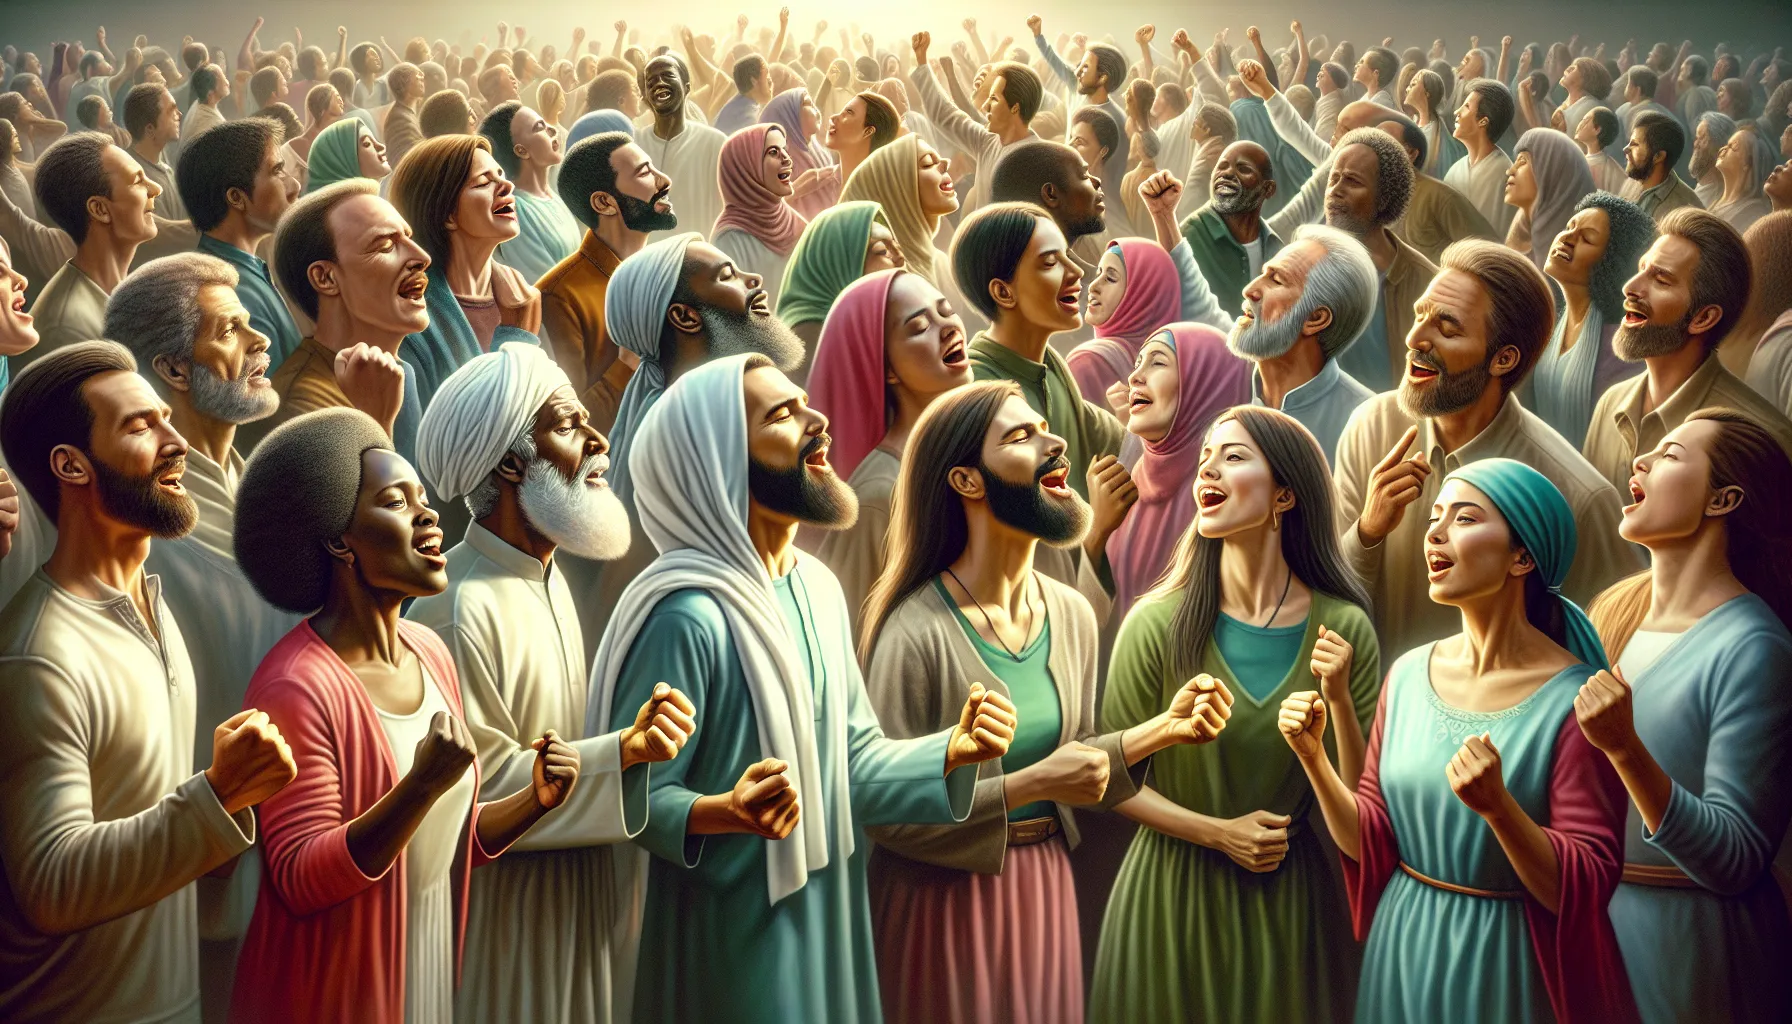 Imagen de personas bailando y adorando a Dios según los principios de la Biblia.